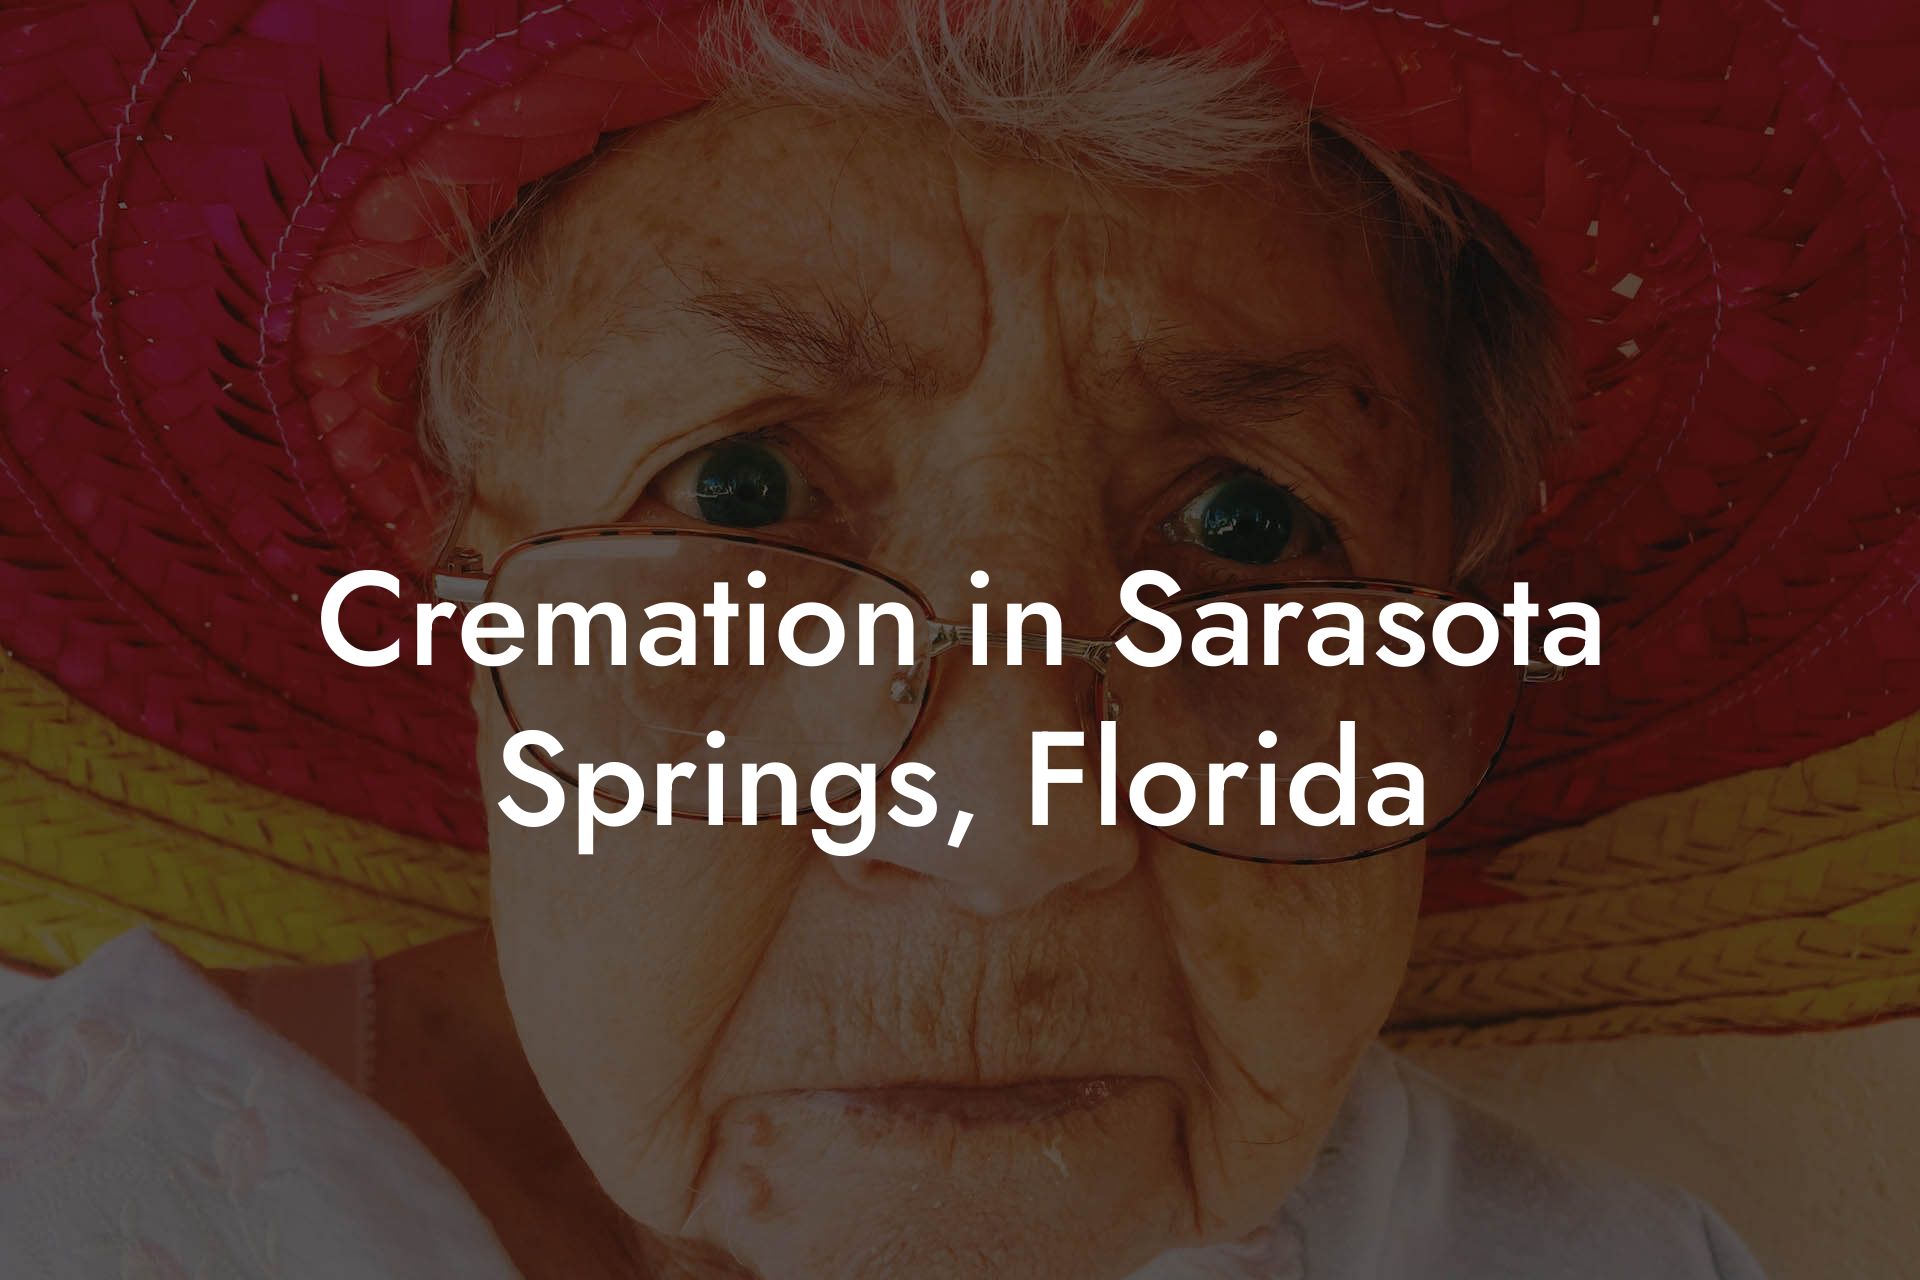 Cremation in Sarasota Springs, Florida